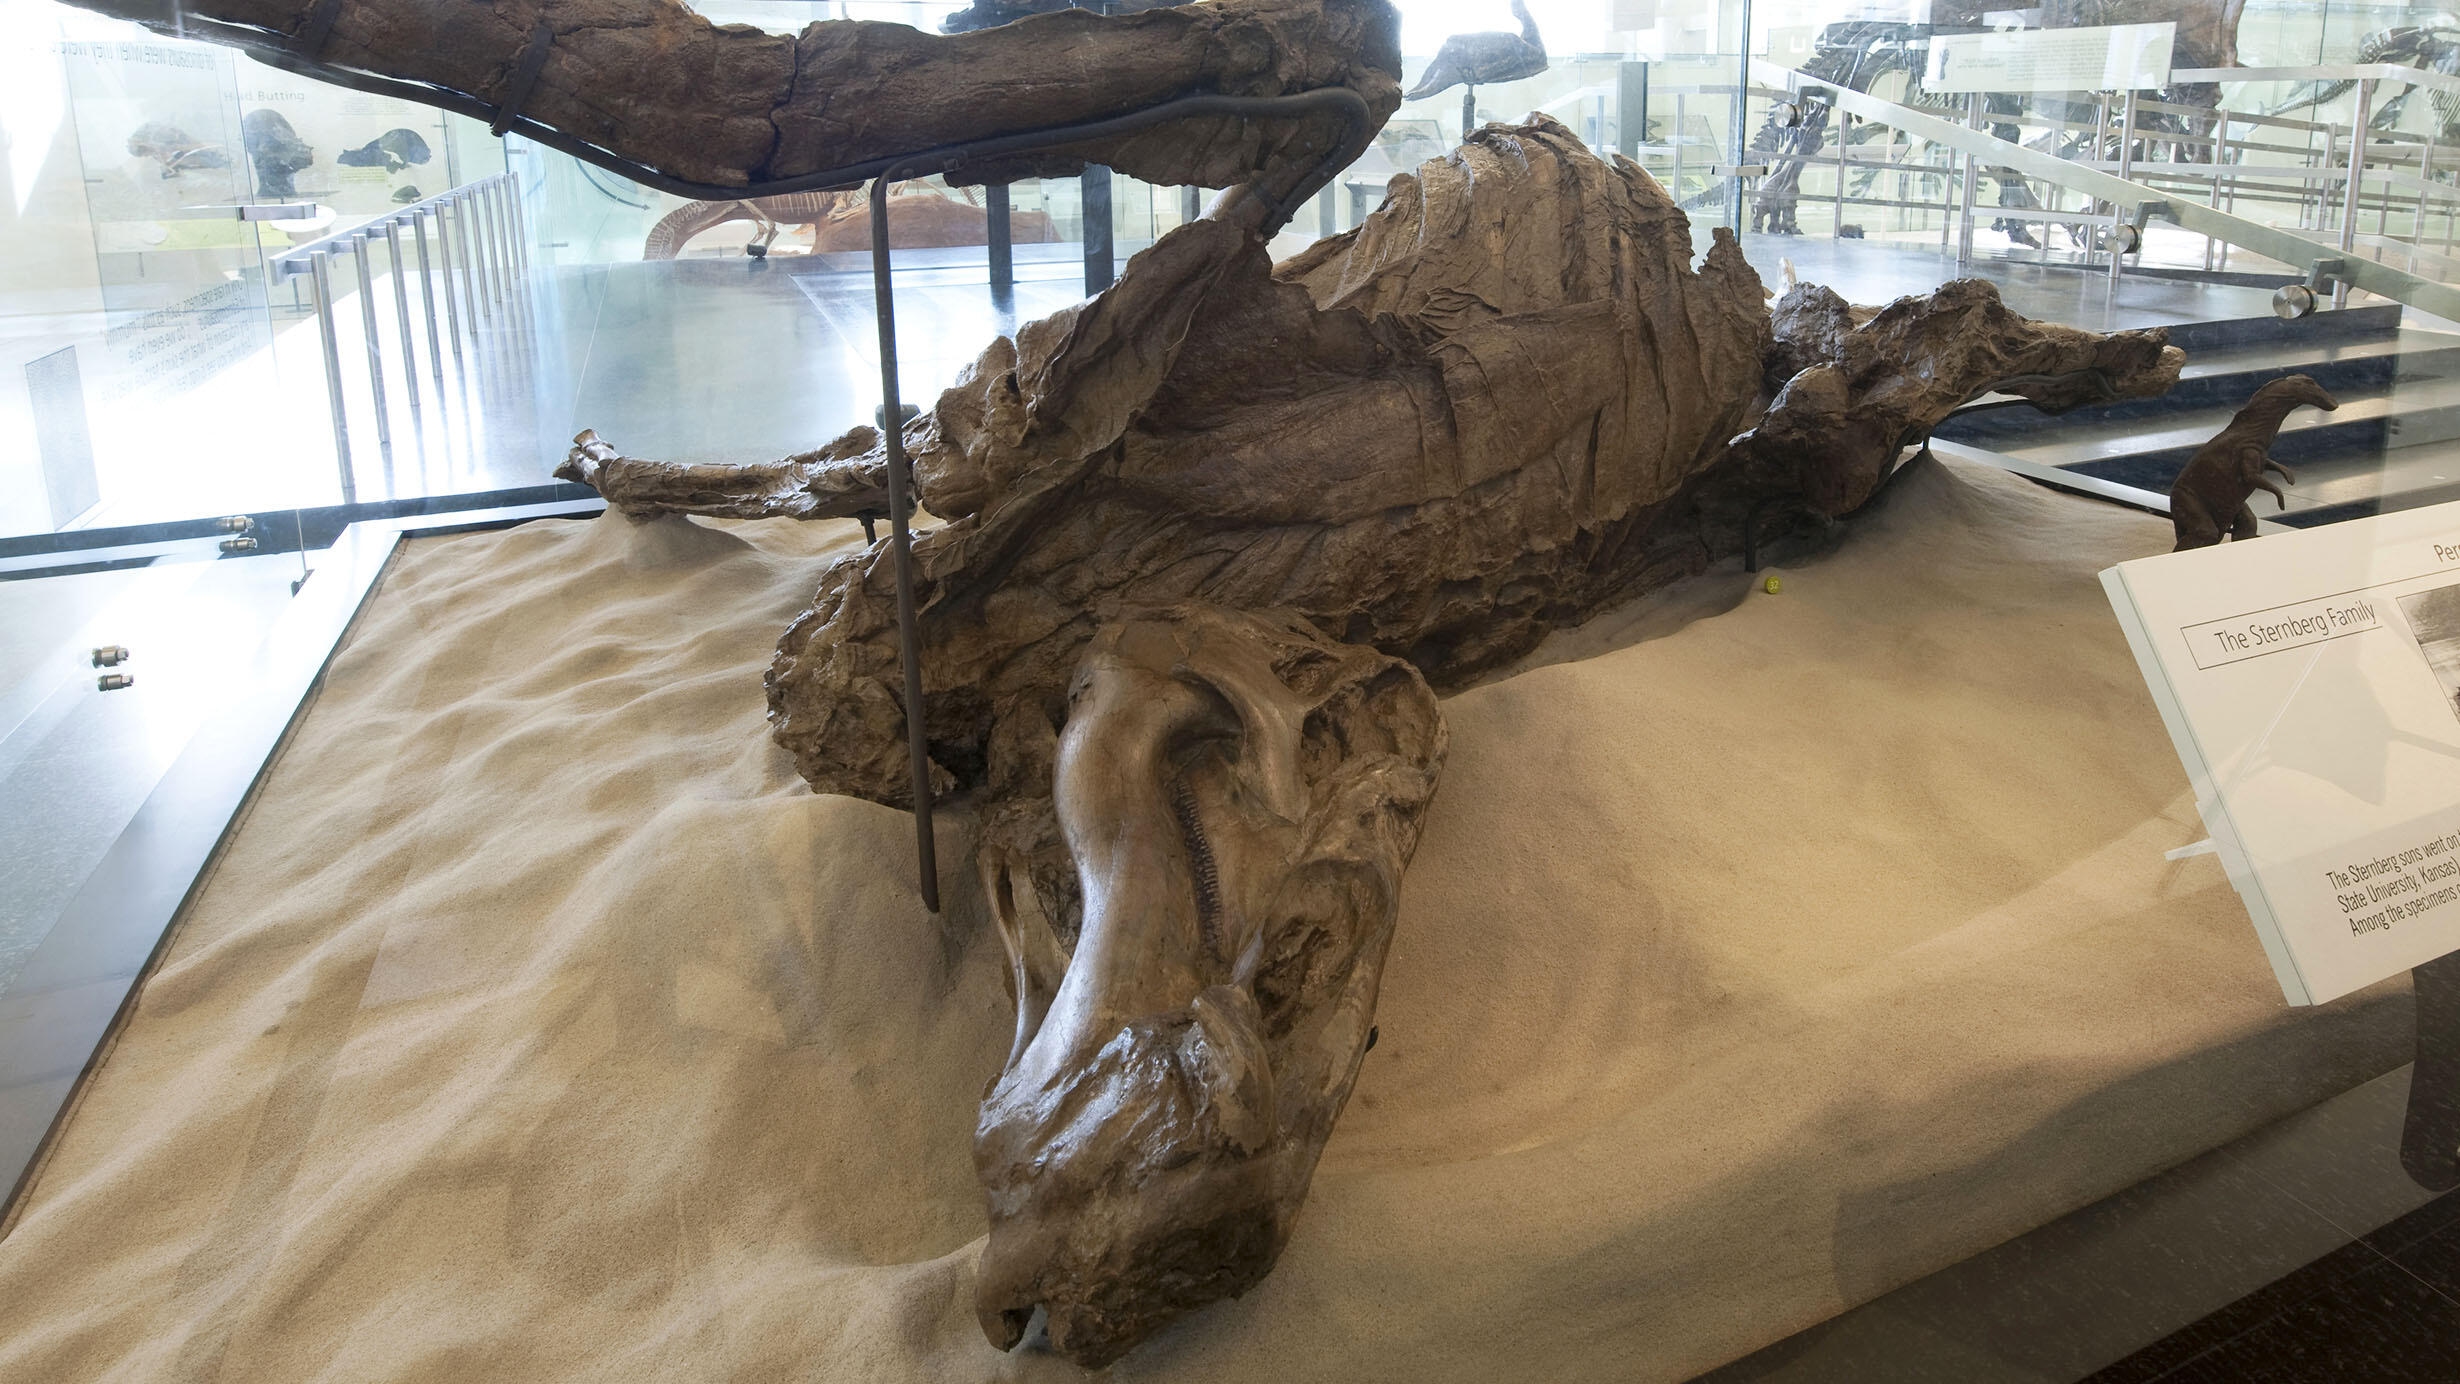 Duck-billed dinosaur mummy mount on display in the fourth floor dinosaur halls.